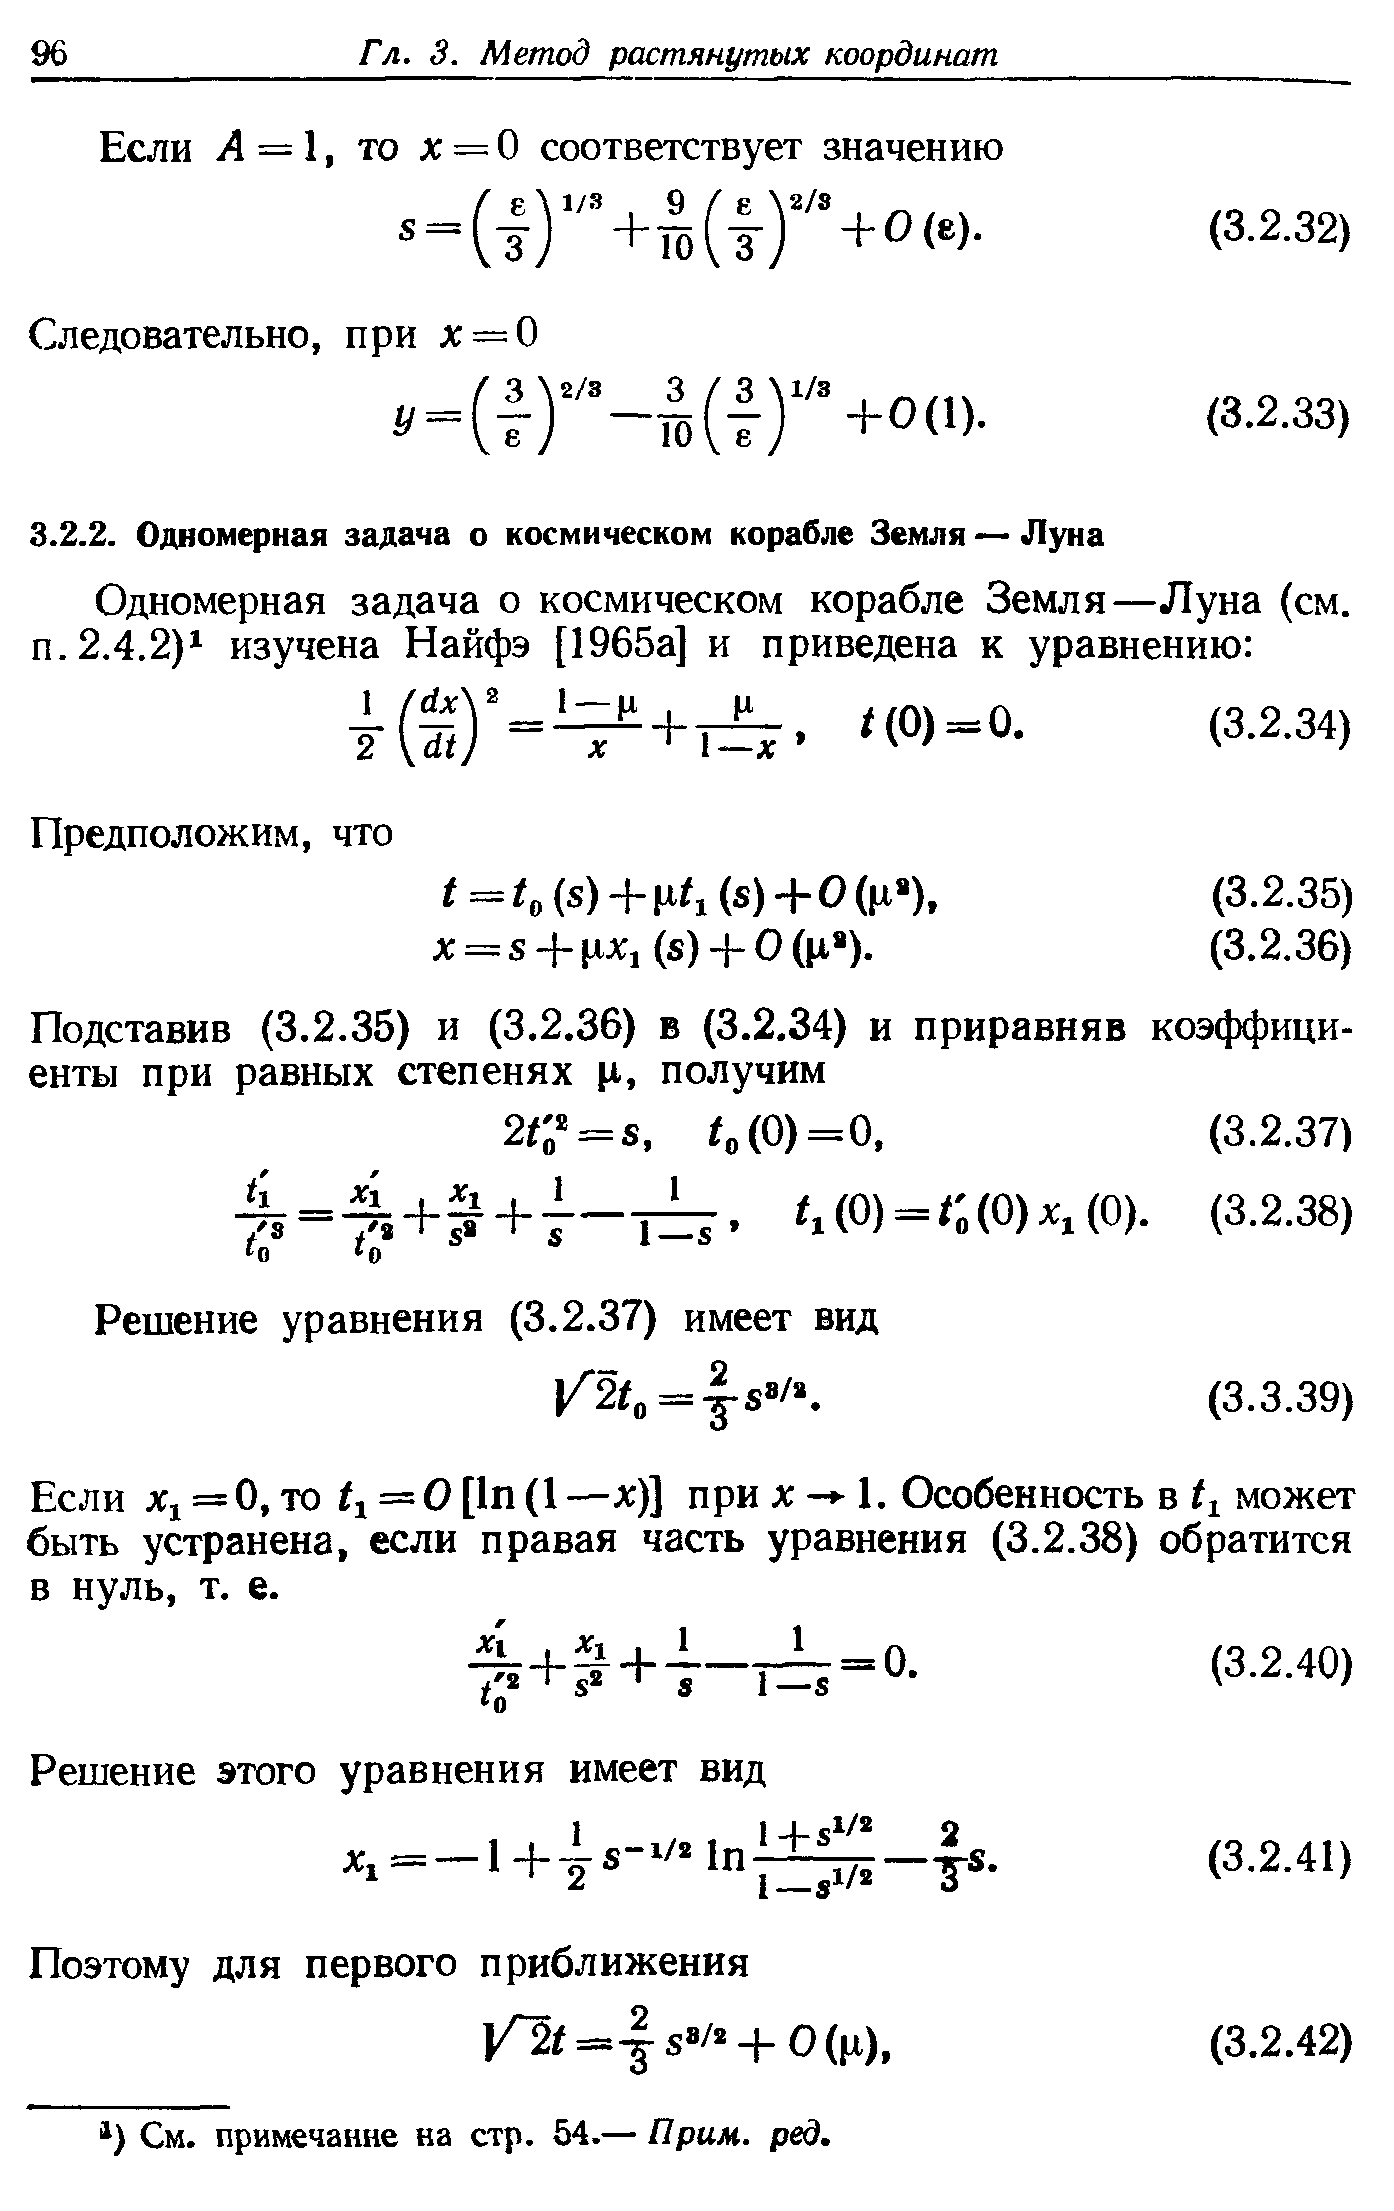 Если = О, то = О [1п (1 —х)] при л - 1. Особенность в может быть устранена, если правая часть уравнения (3.2.38) обратится в нуль, т. е.
